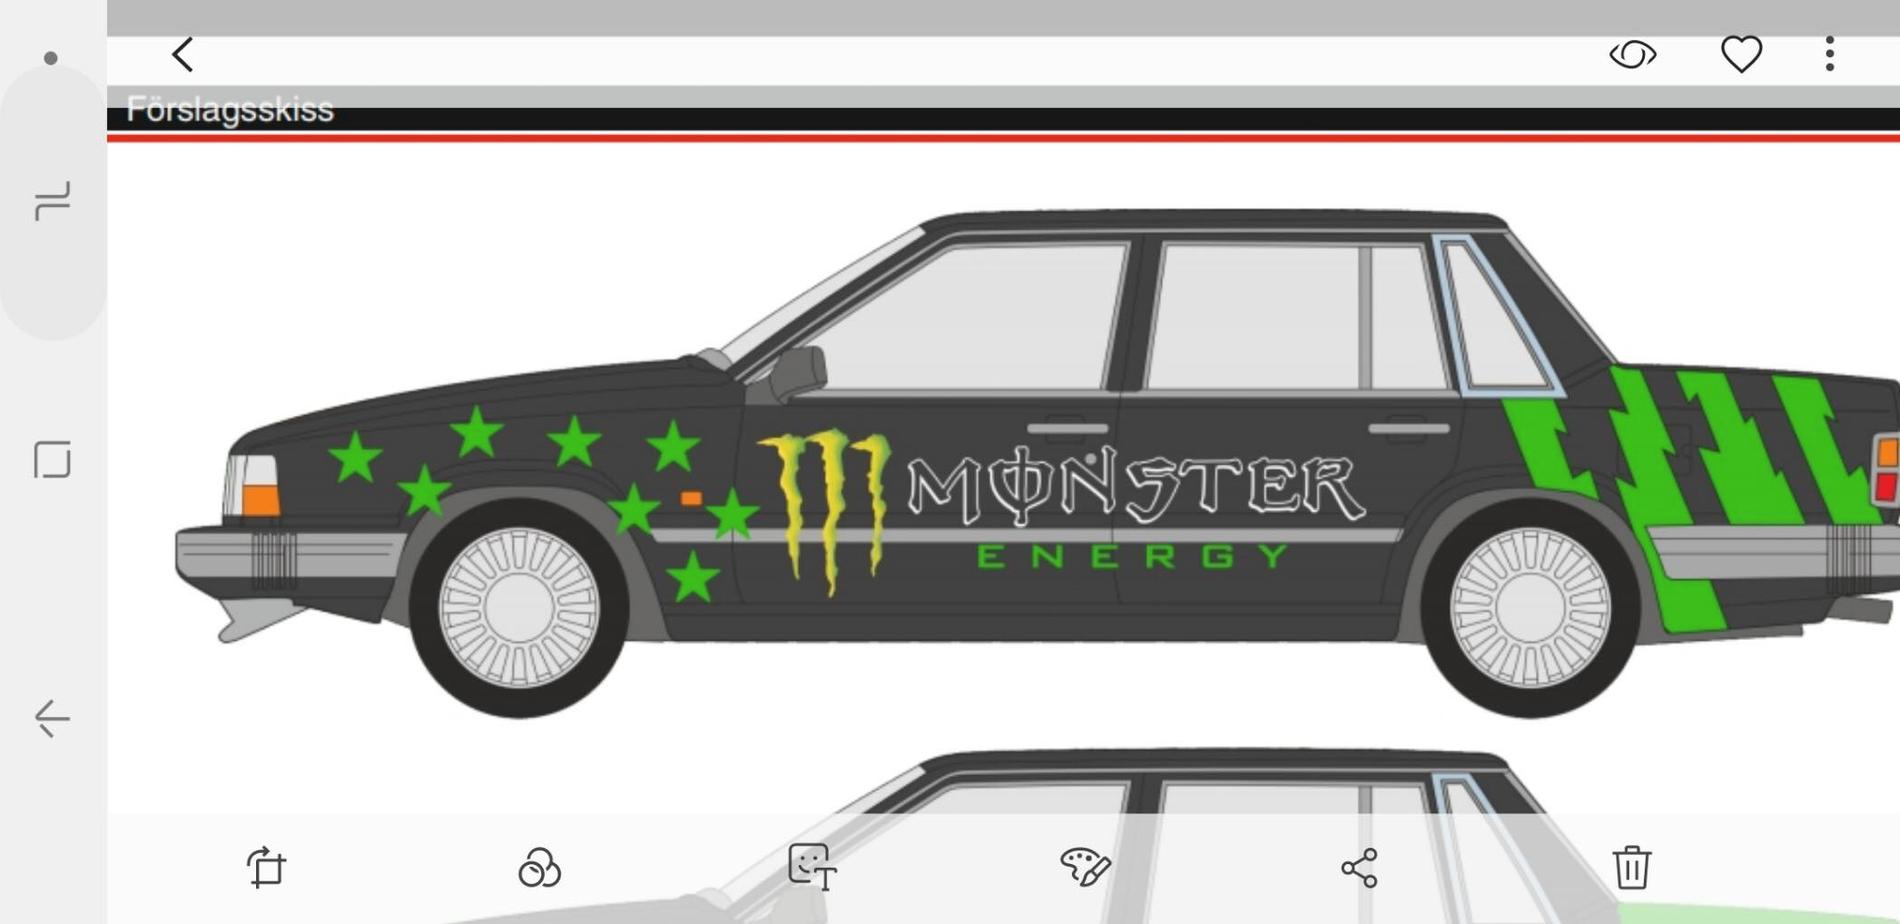 Så här vill Kevin att bilen ska se ut – med tydligt Monster-tema.